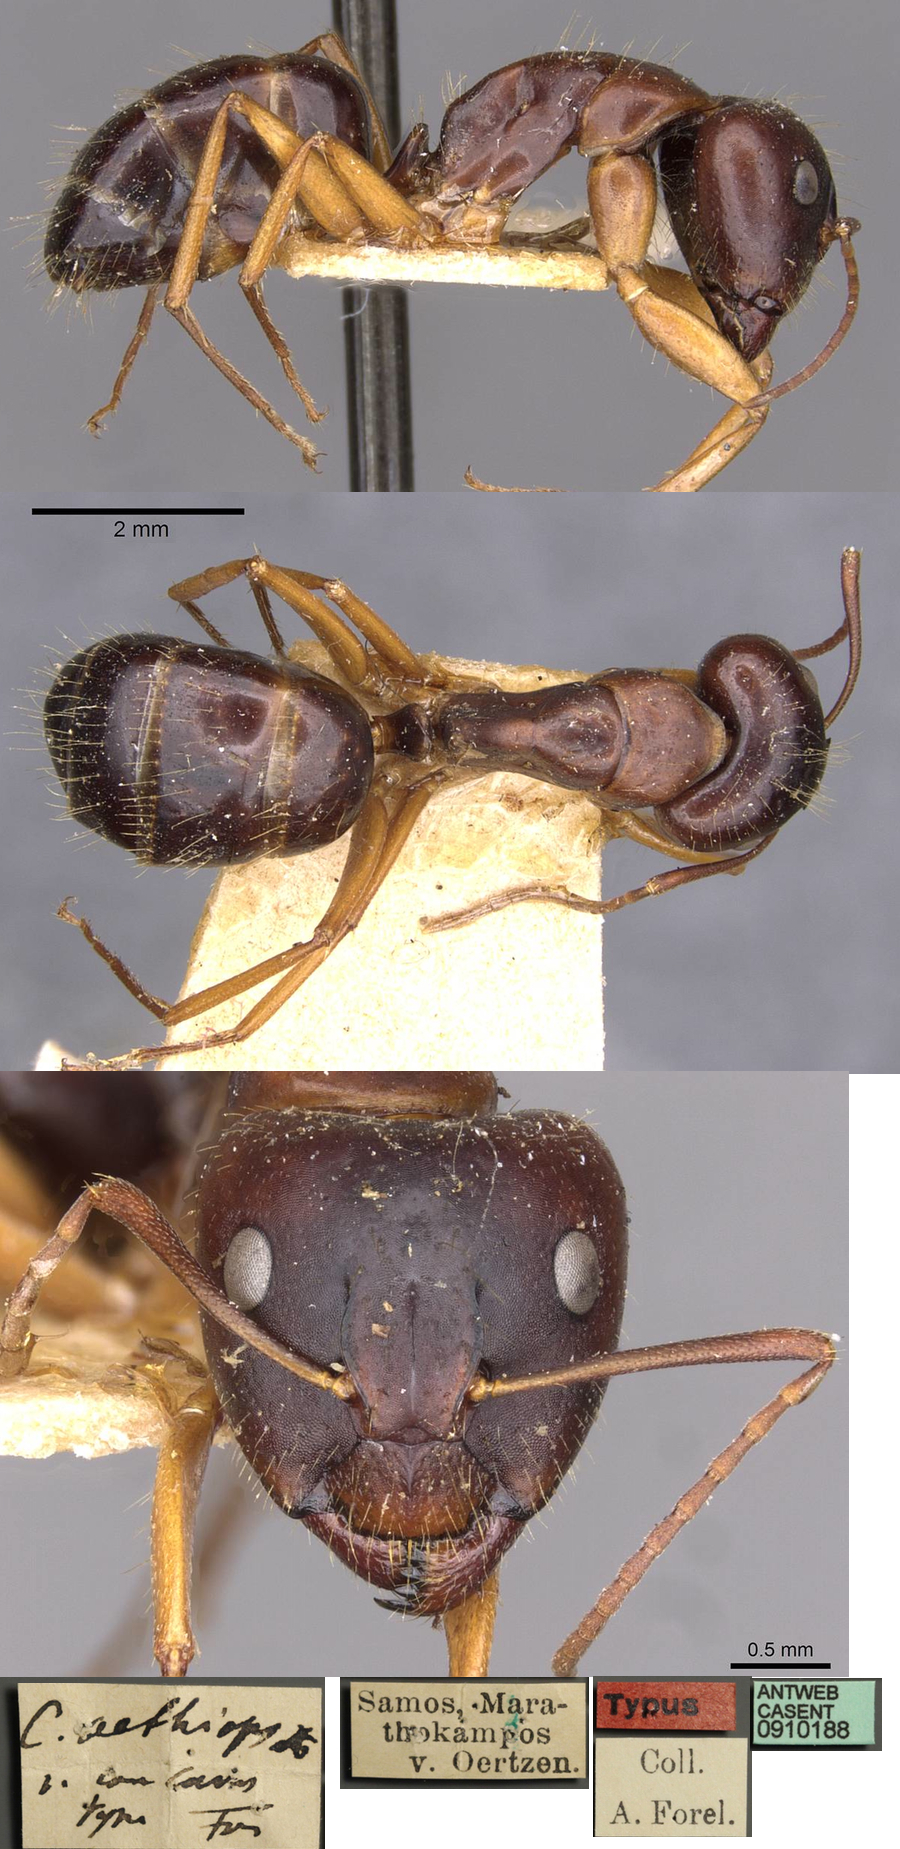 Camponotus aethiops concava major